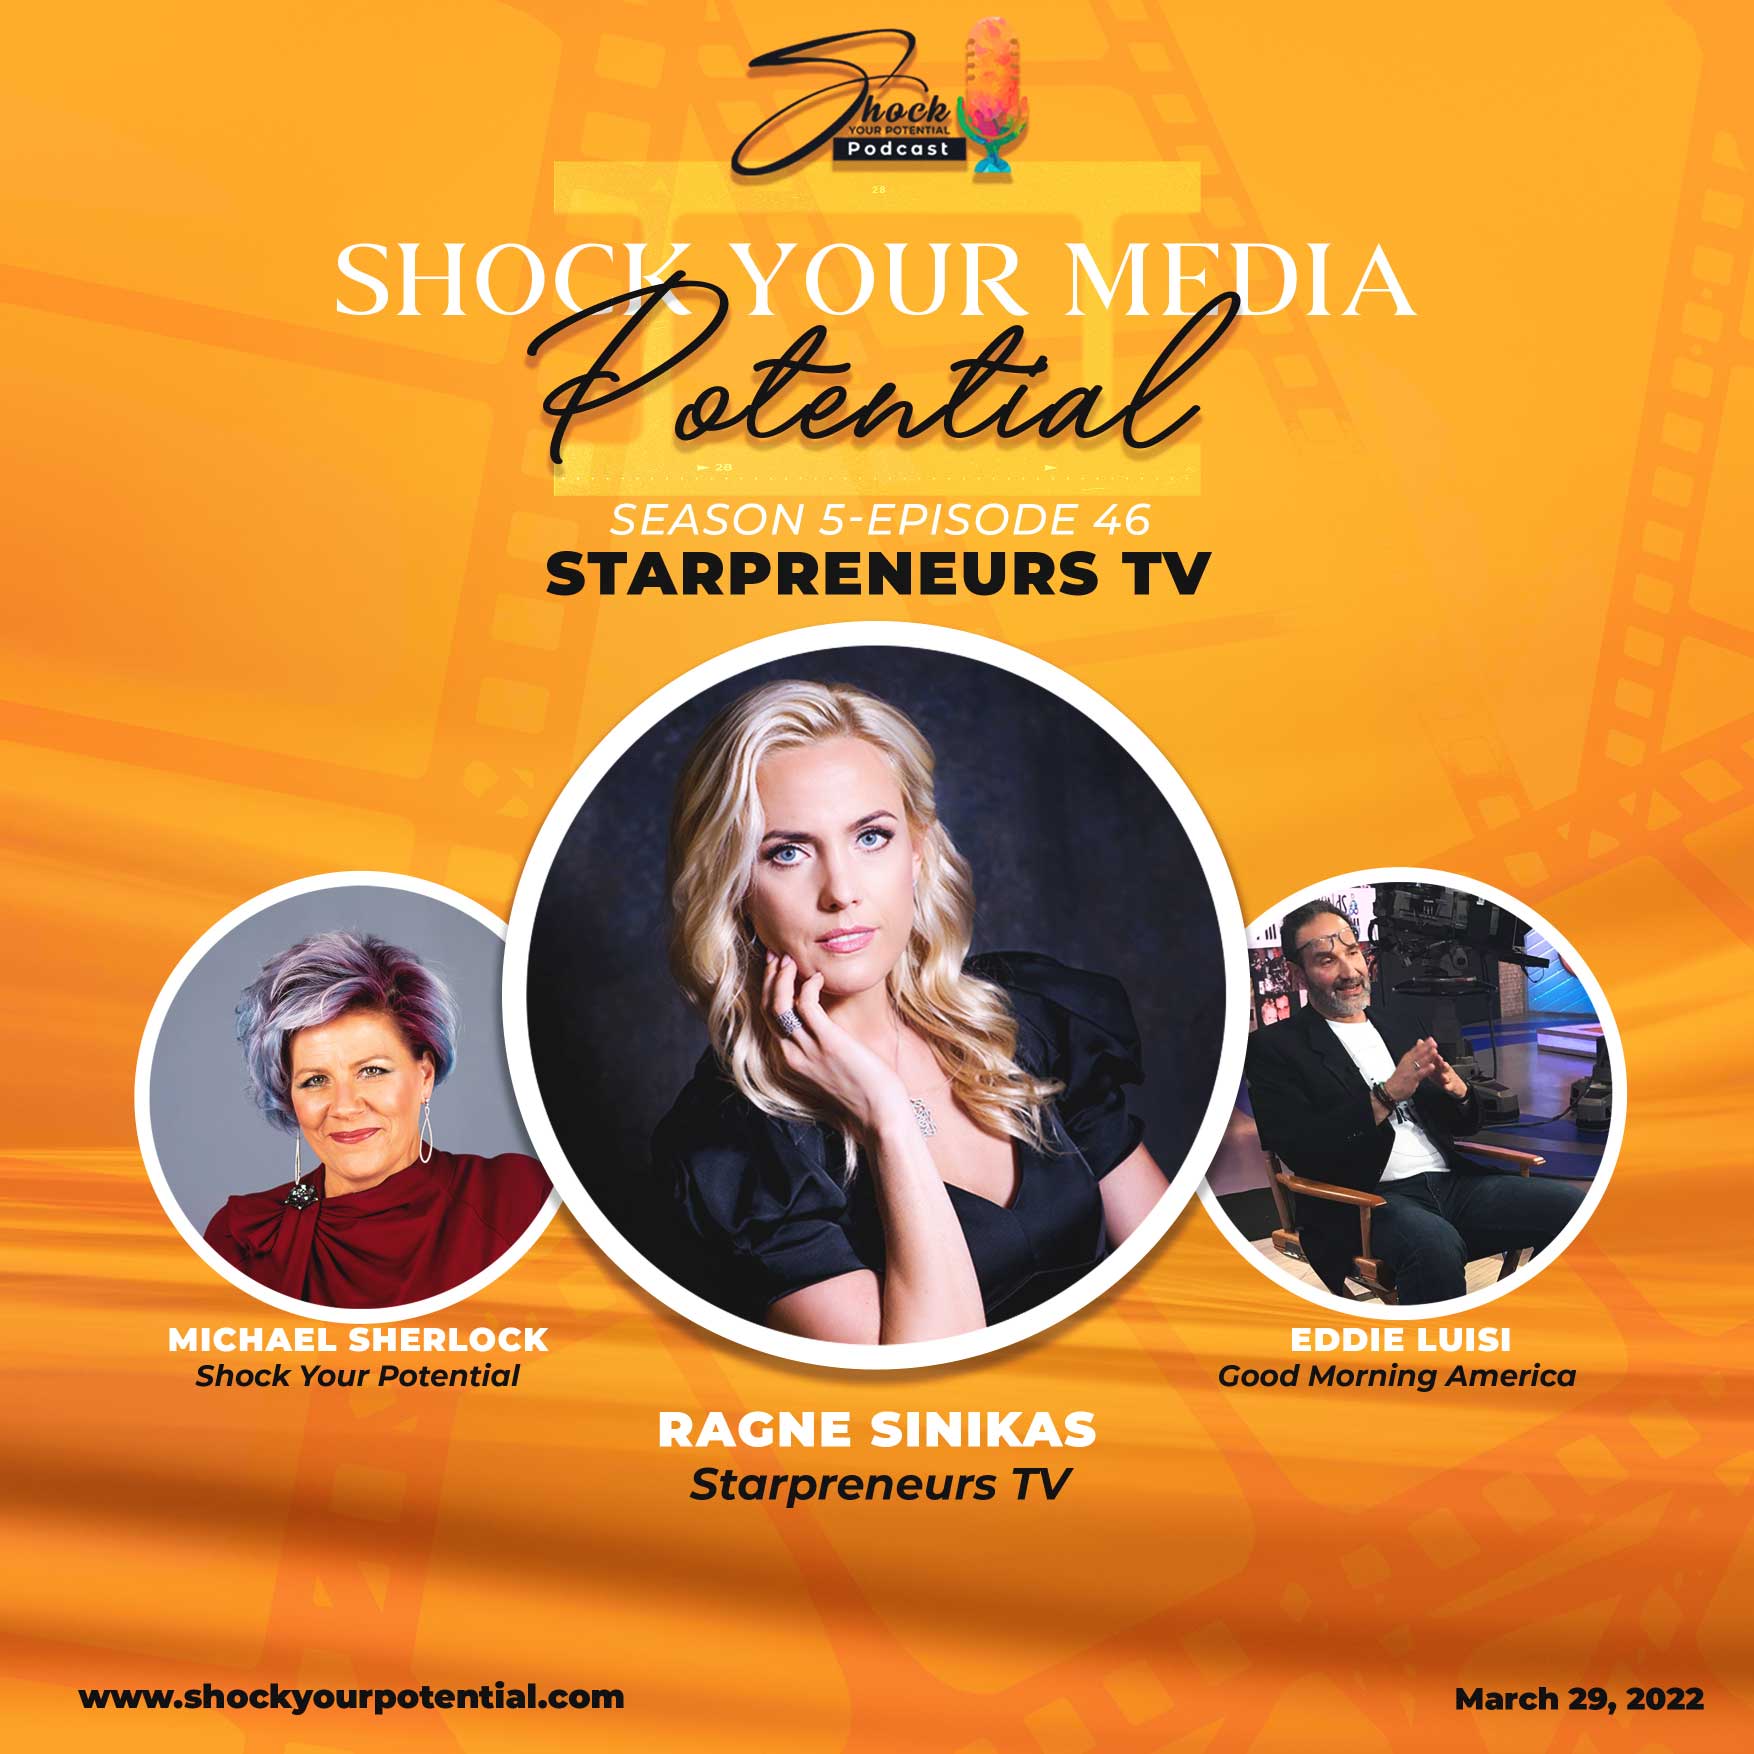 Starpreneurs TV – Ragne Sinikas